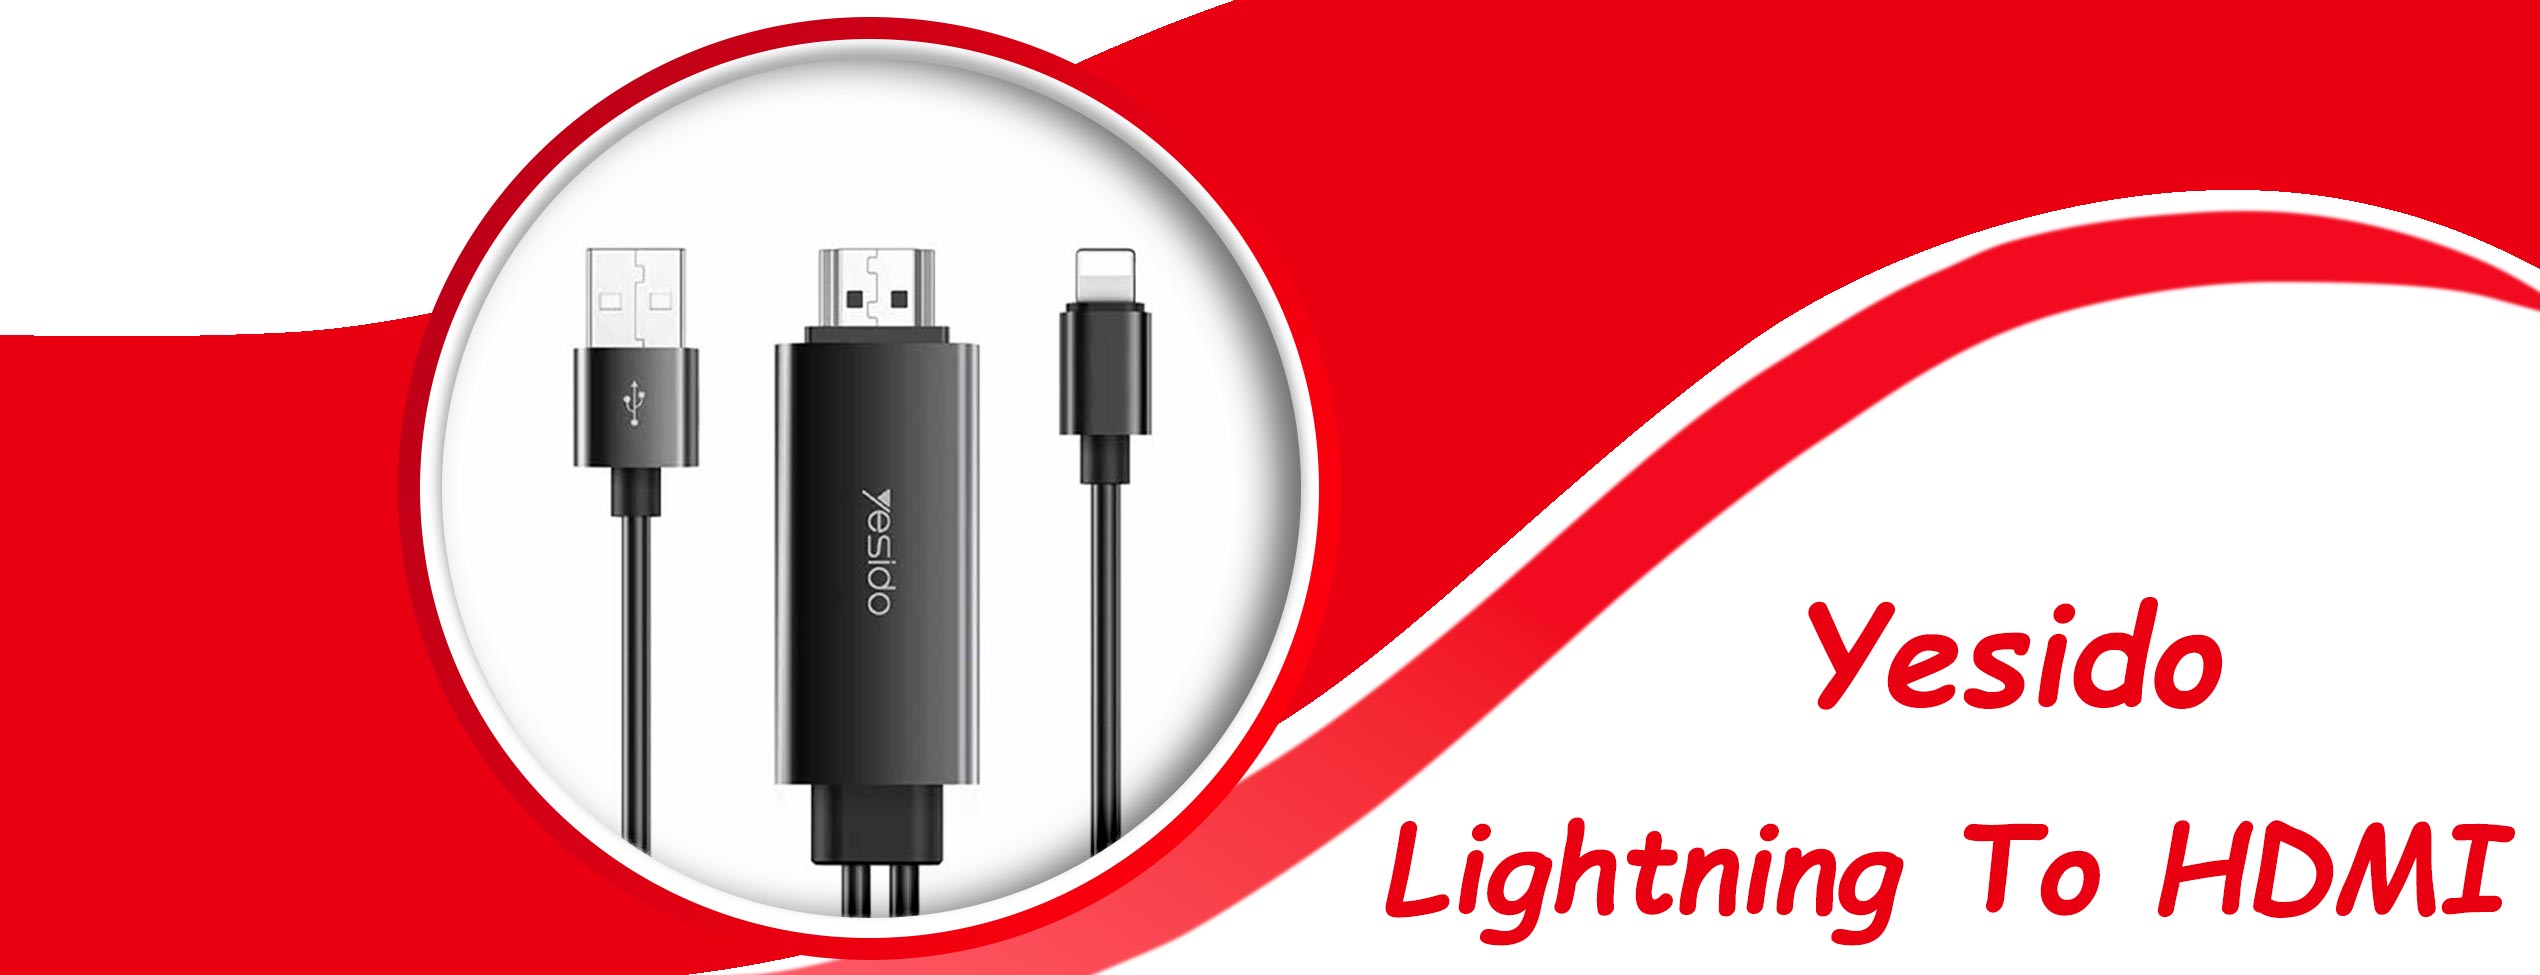 تبدیل Lightning به HDMI یسیدو HM04